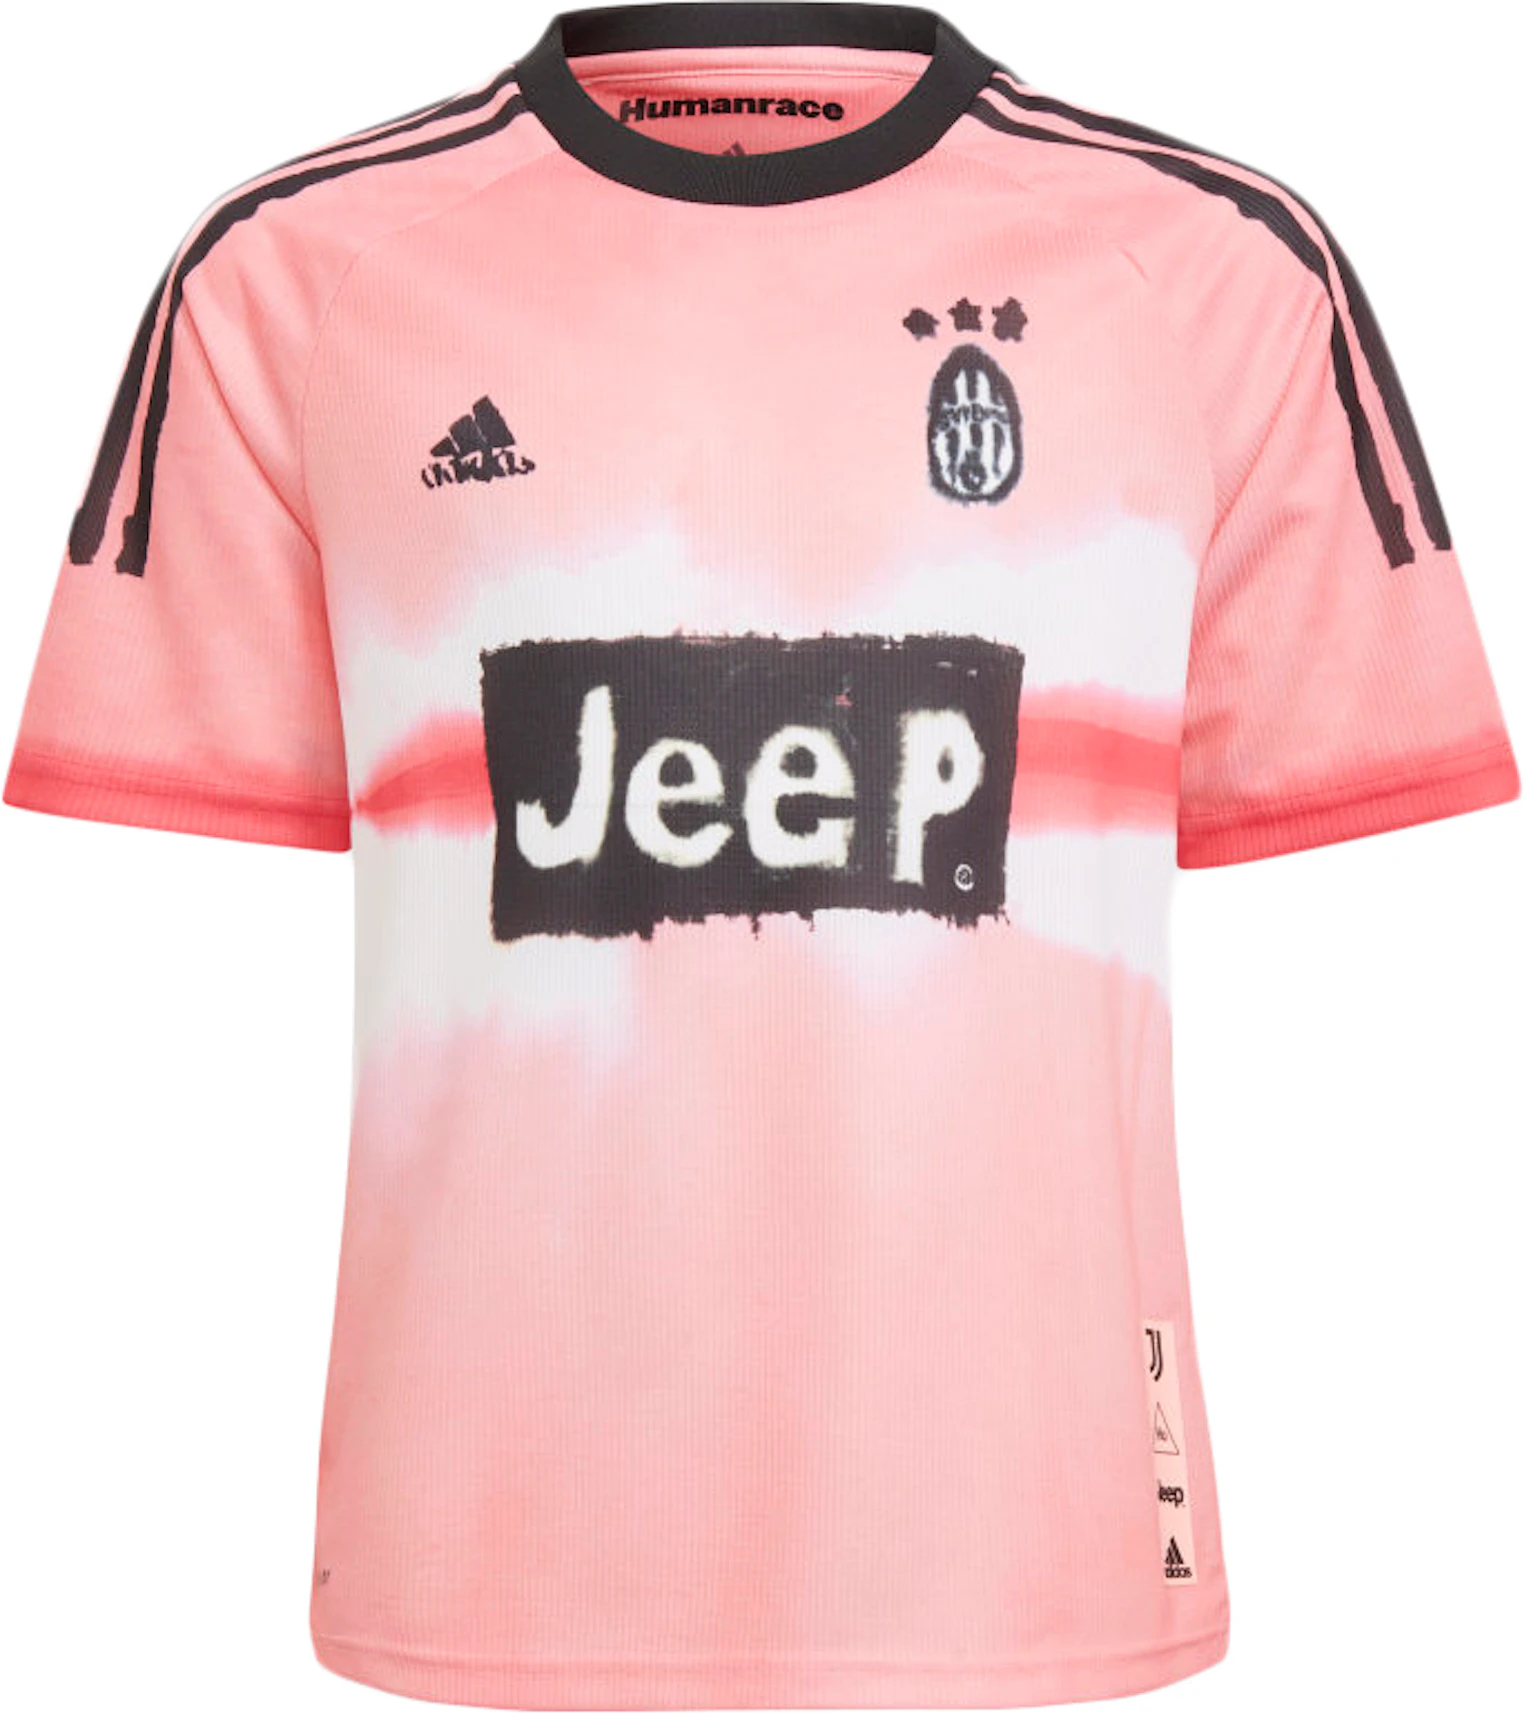 Juventus Human Race Kids Jersey Glow Pink/Black - FW20